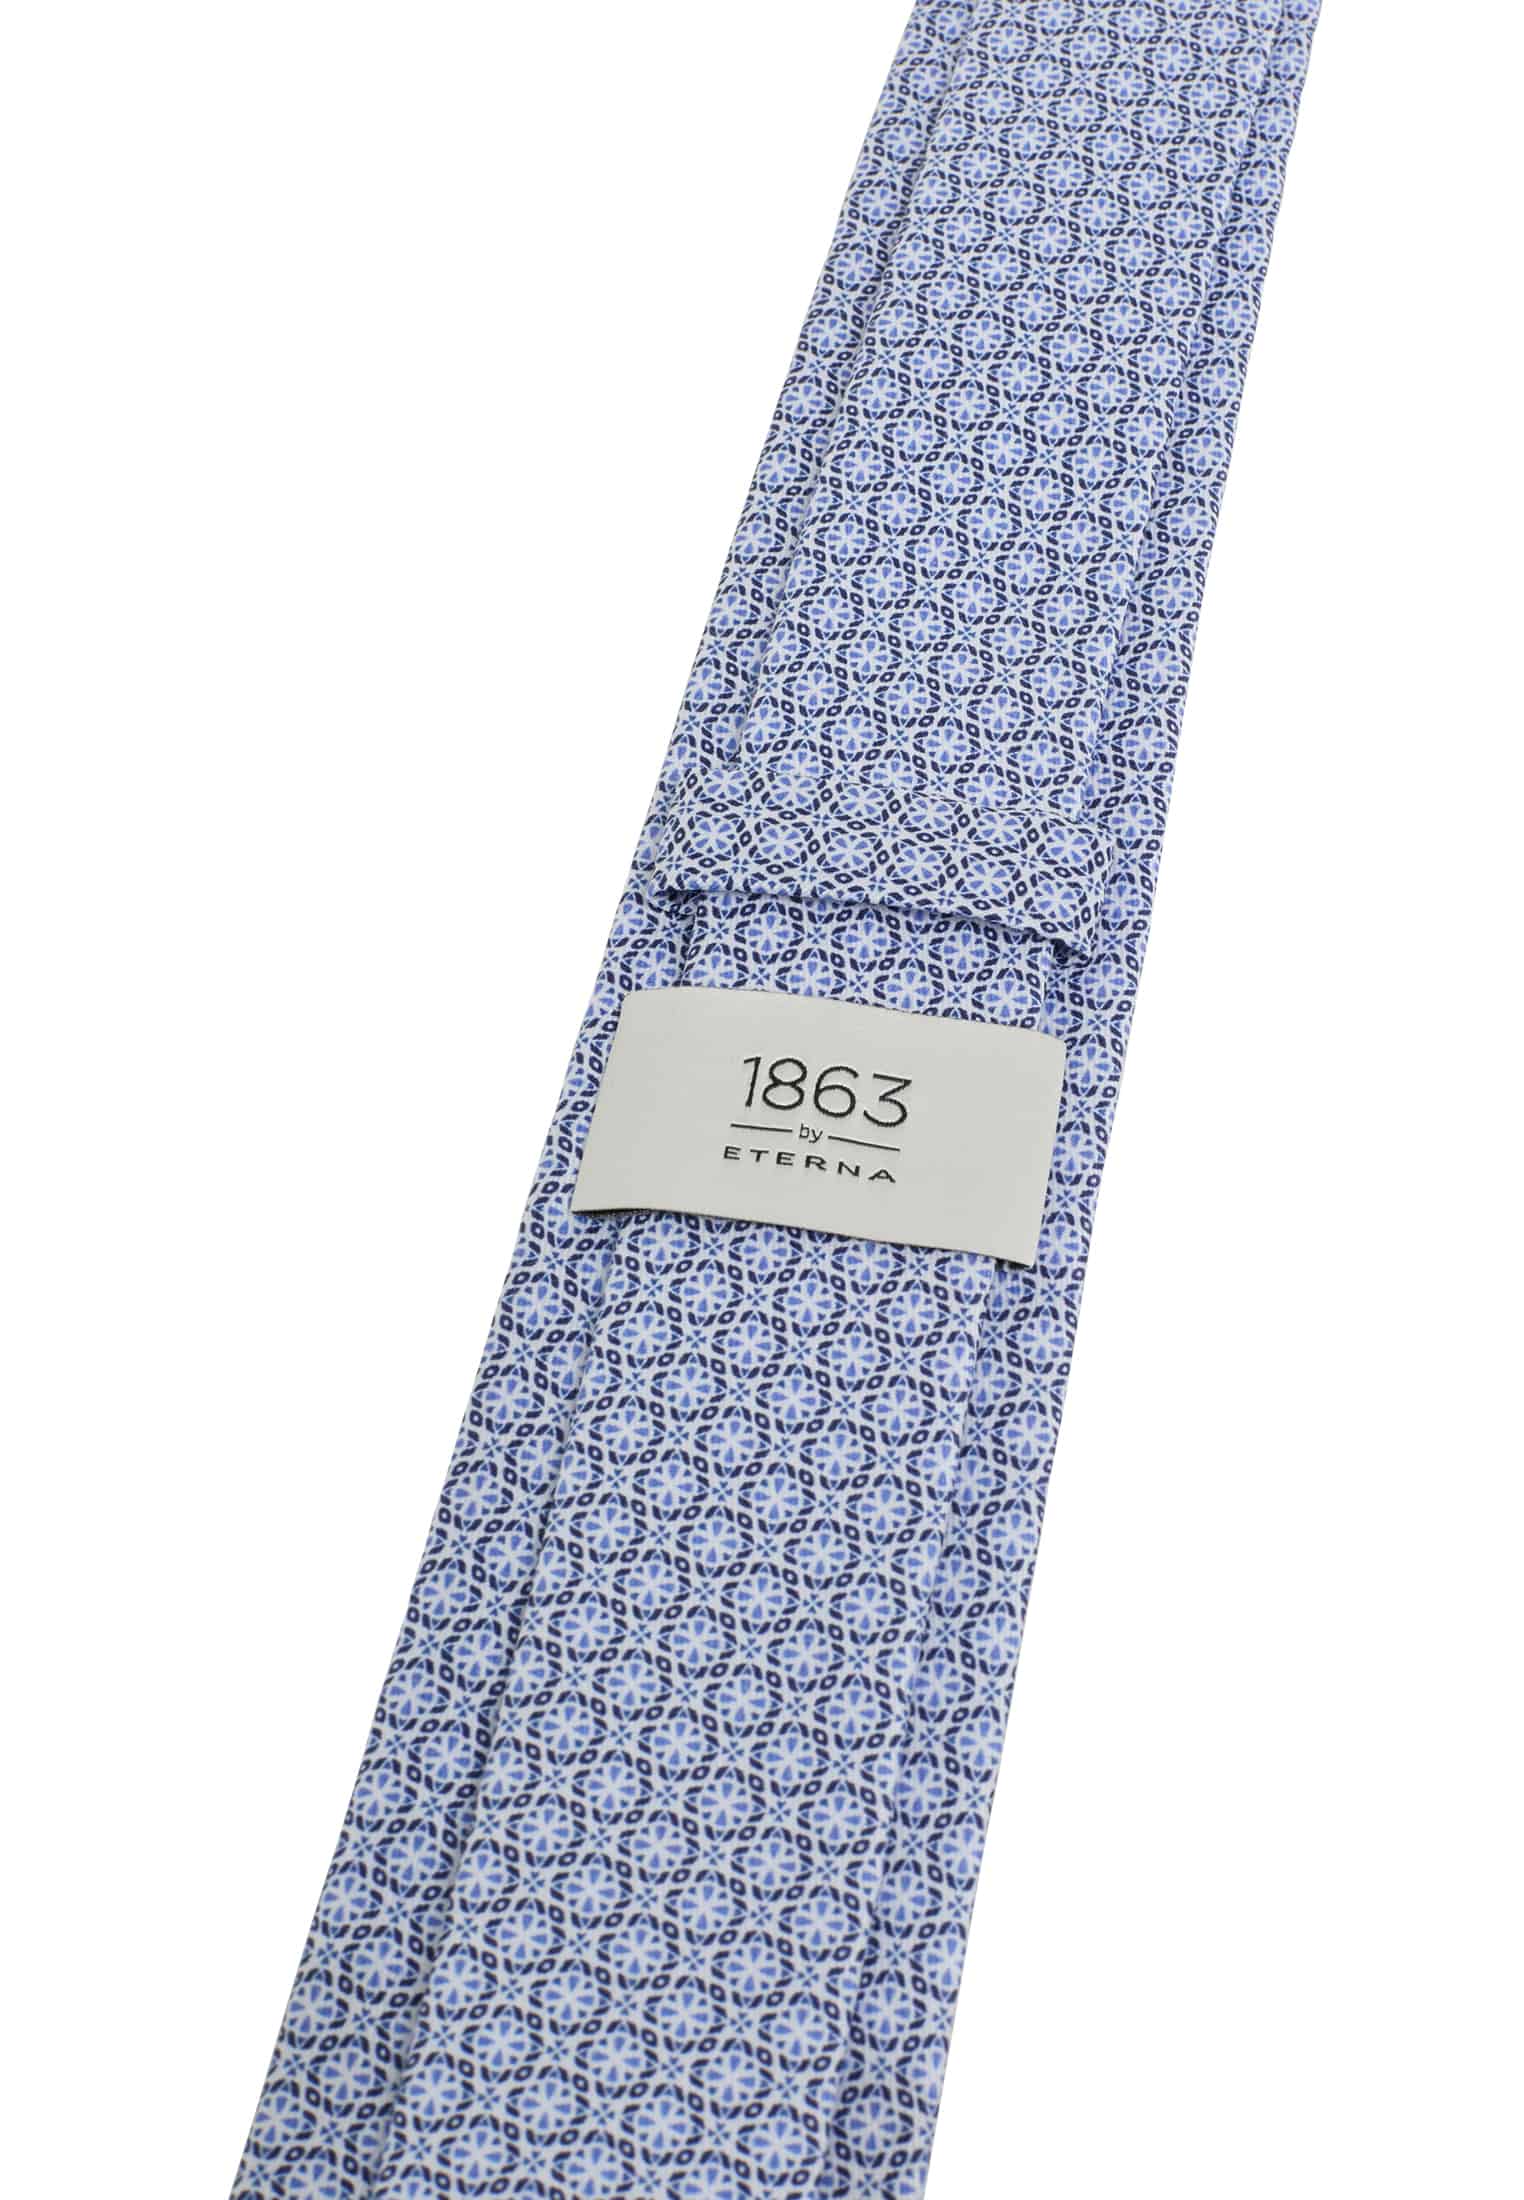 Tie in blue printed